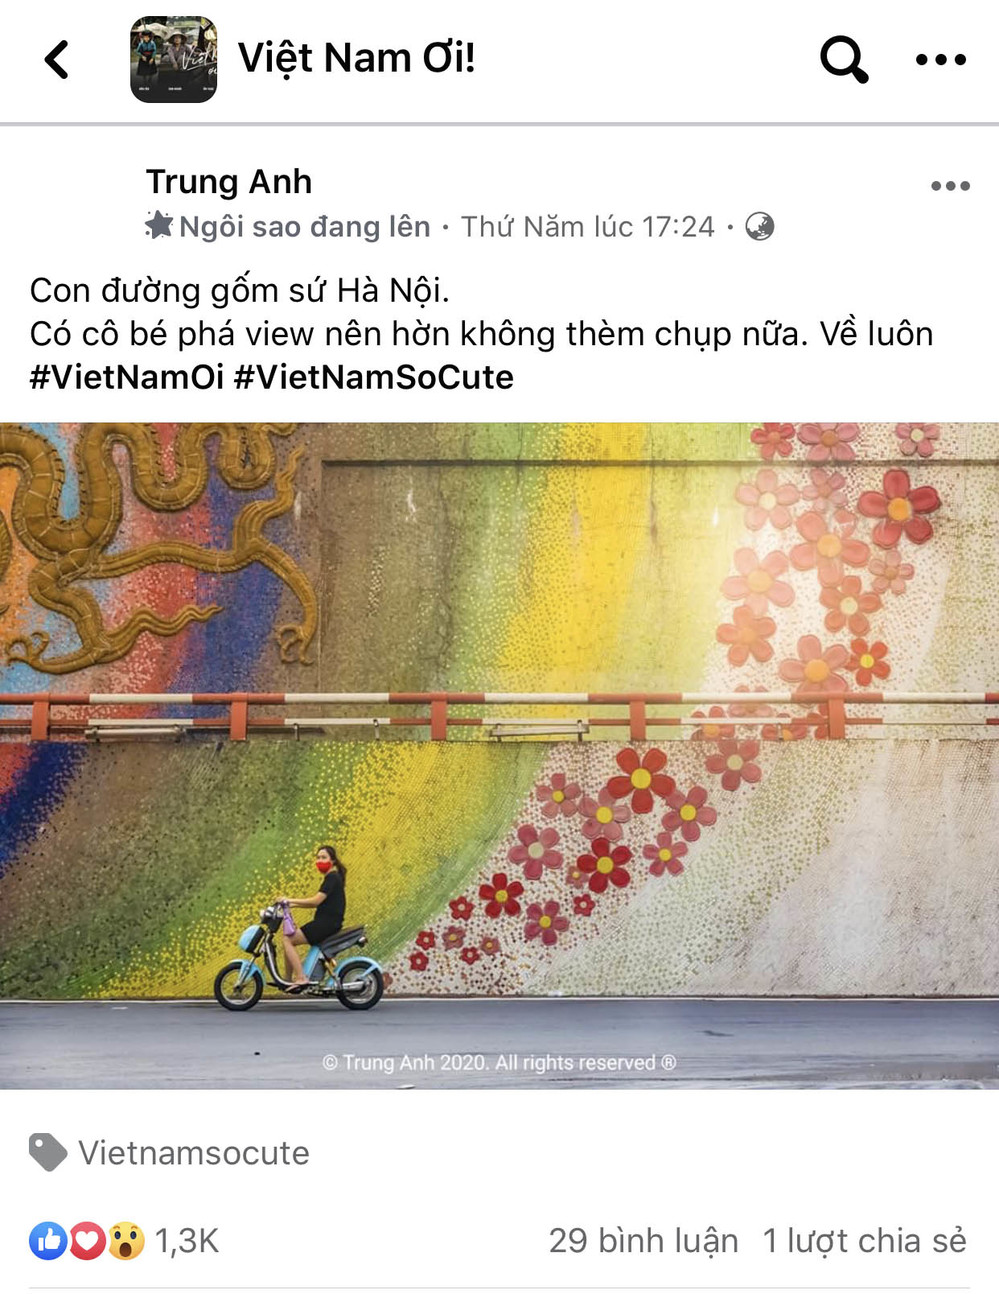  
Việt Nam Dễ Thương sẽ mang đến cho bạn những điều vô cùng sâu sắc và ý nghĩa.